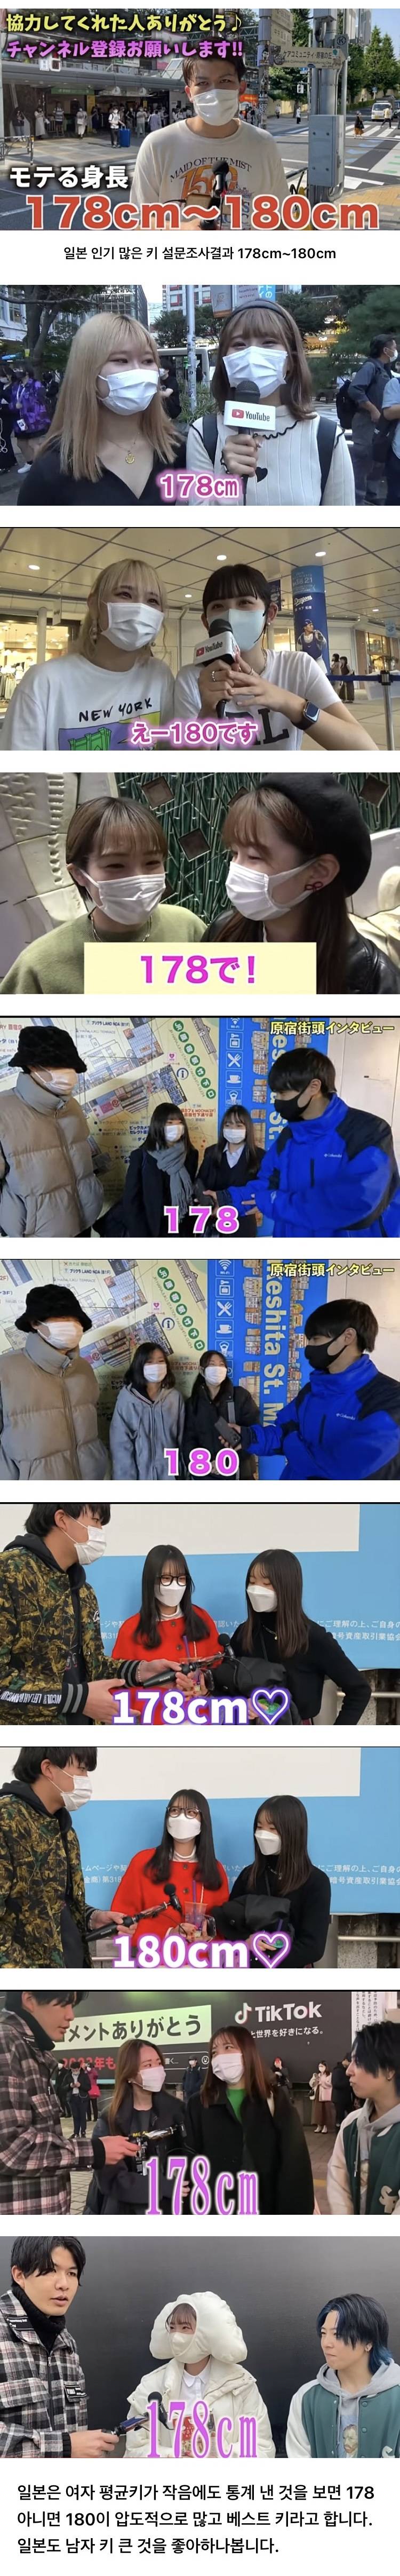 일본여자들이 선호하는 남자 키